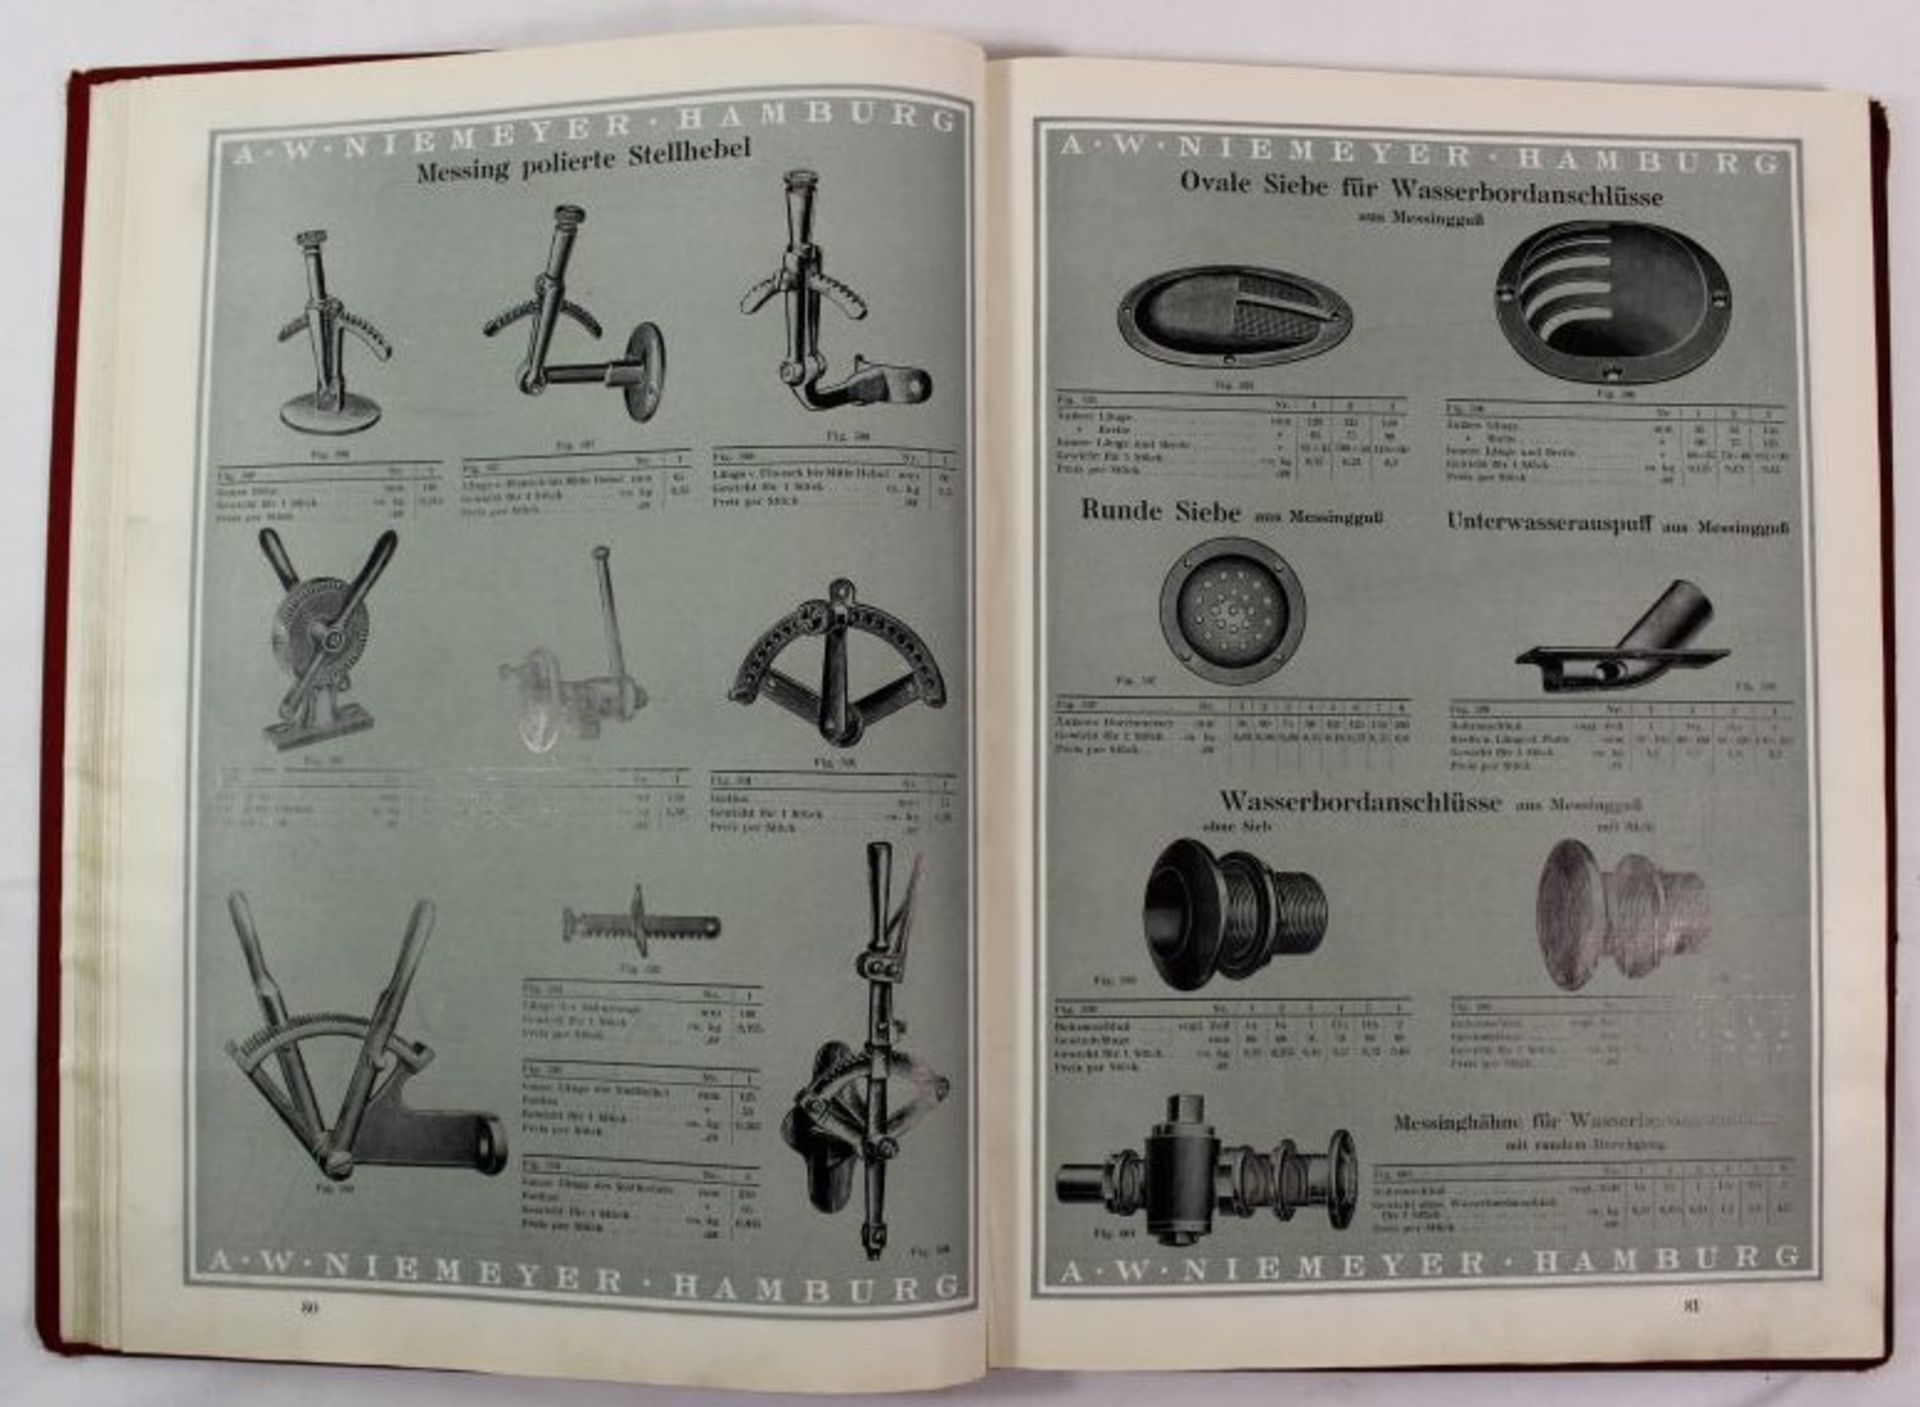 A.W.Niemeyer Hbg. Sonderkatalog über Schiffs-Bedarfsartikel Beschläge Eisenwaren, Nr. 3004, o.J., - Bild 3 aus 3